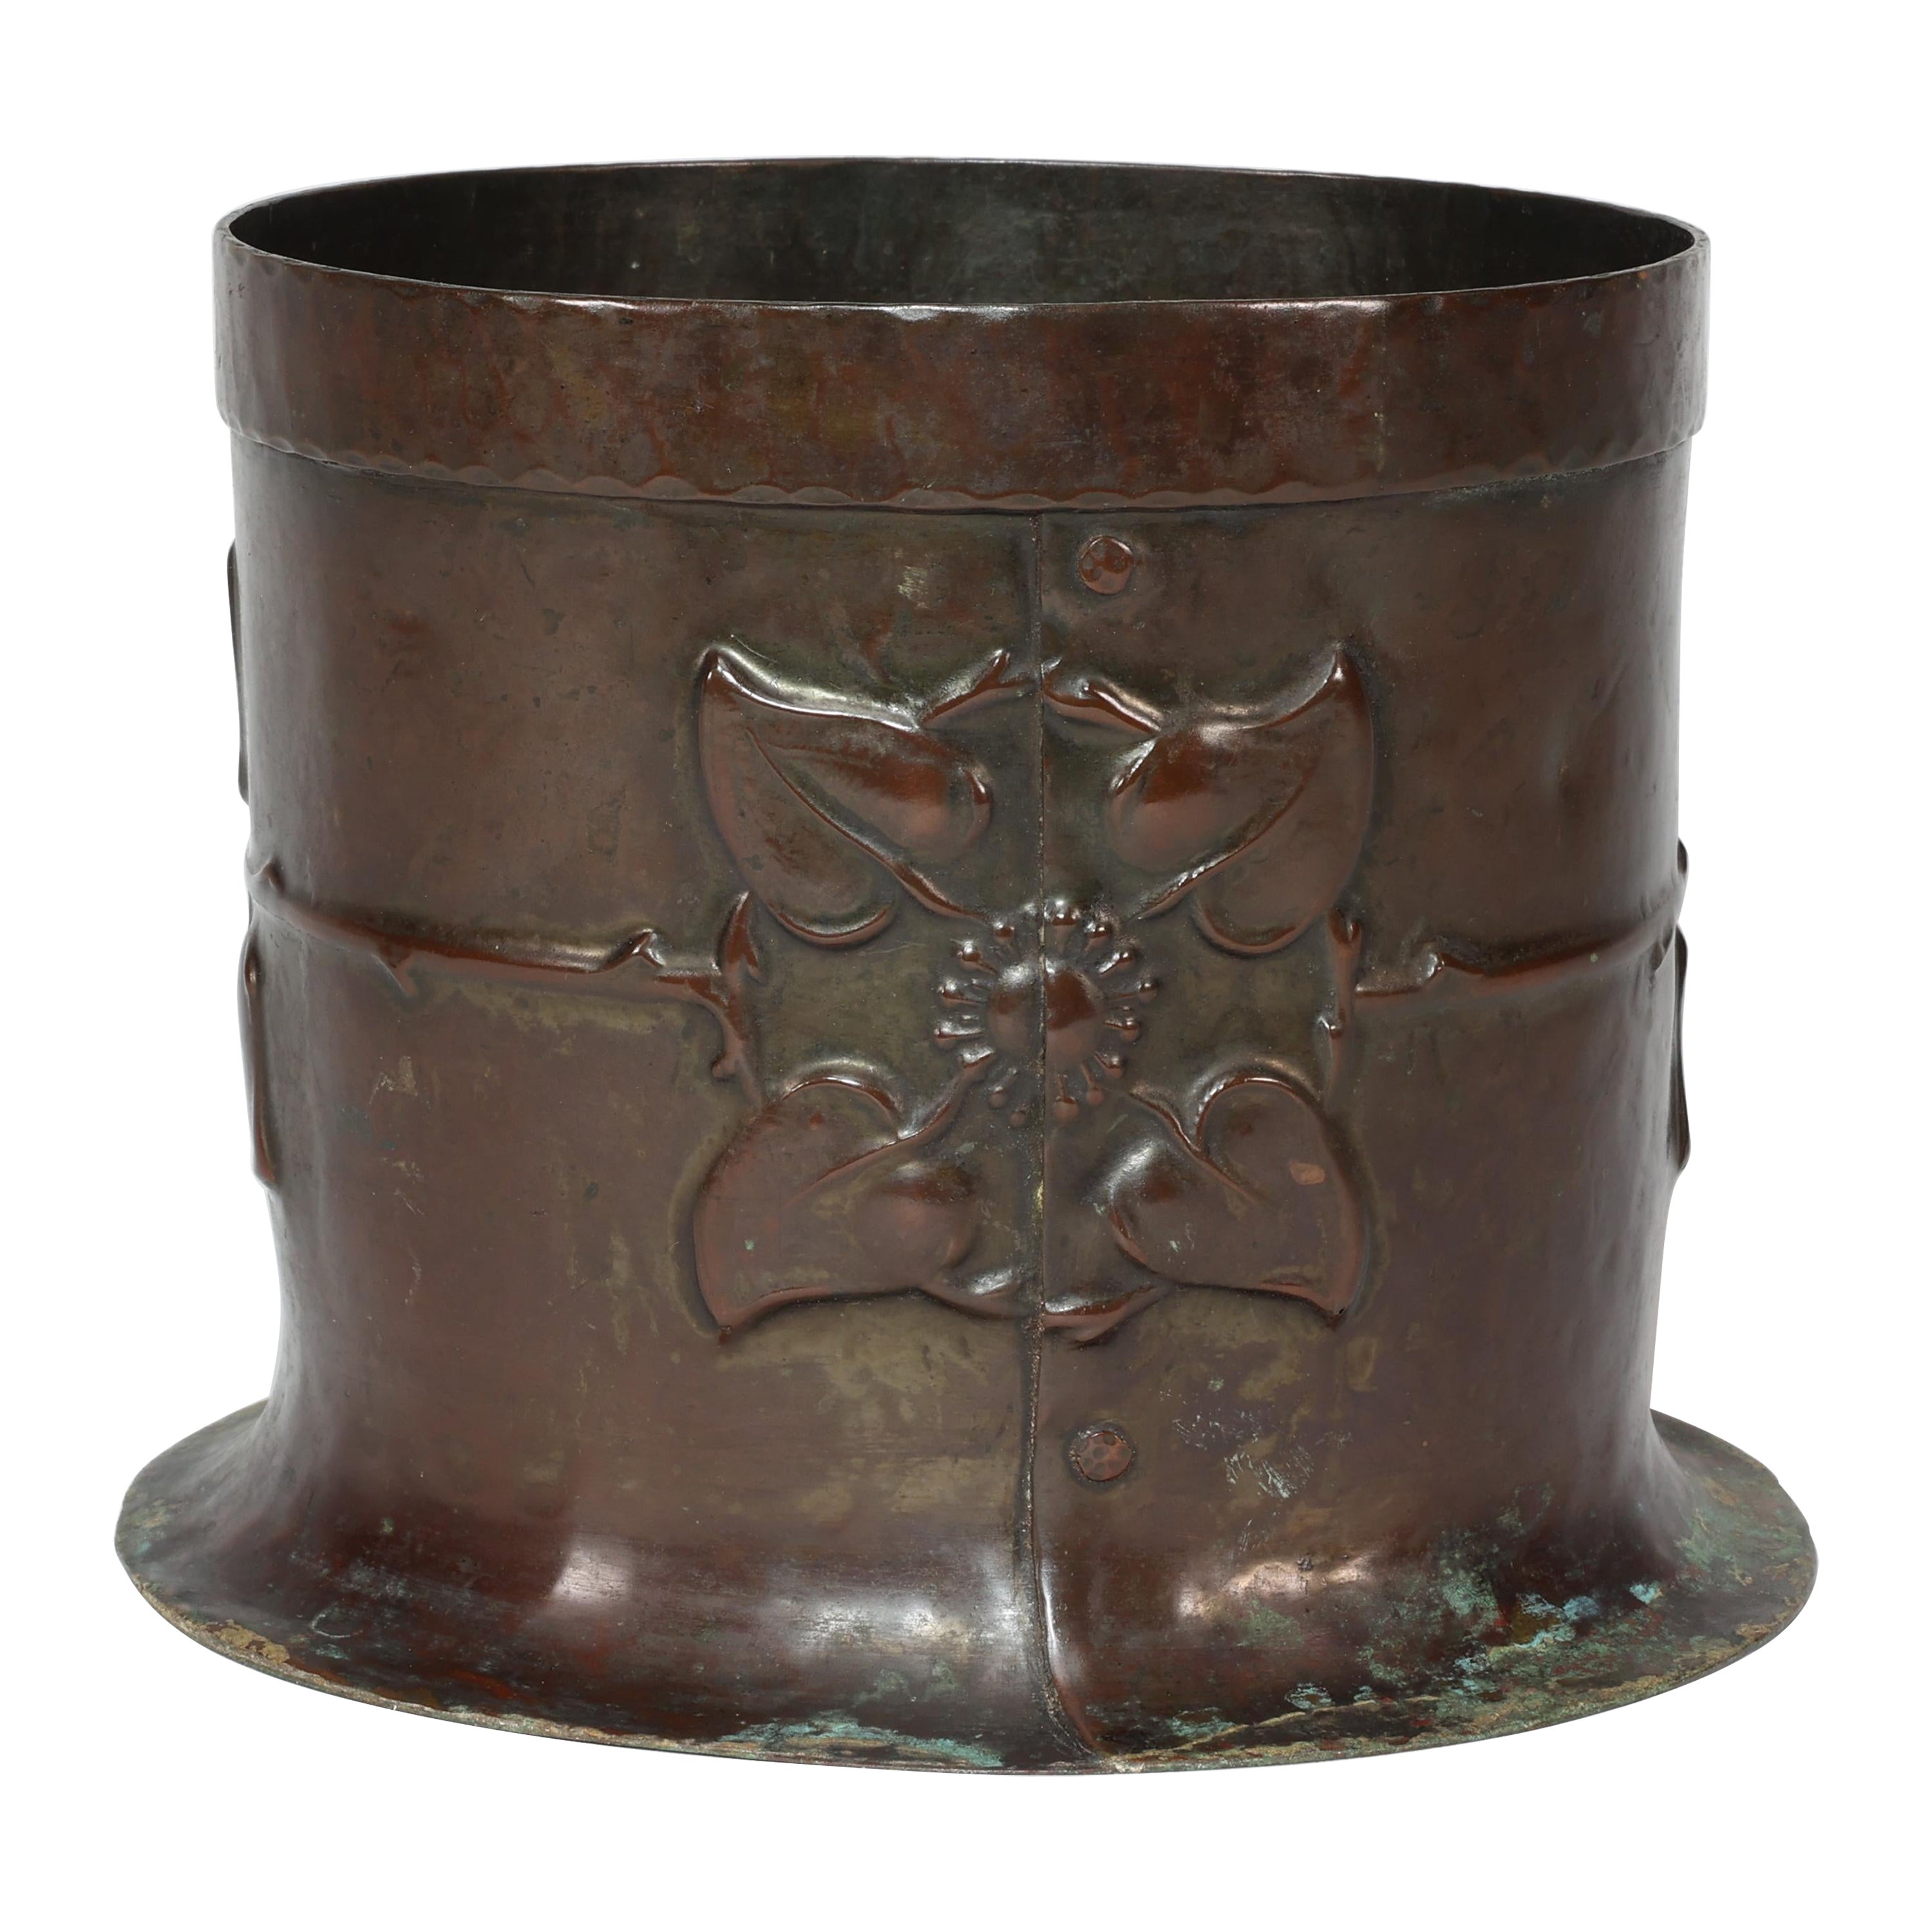 Guild of Handicraft style de. Un pot à plantes Arts & Crafts avec deux fleurons